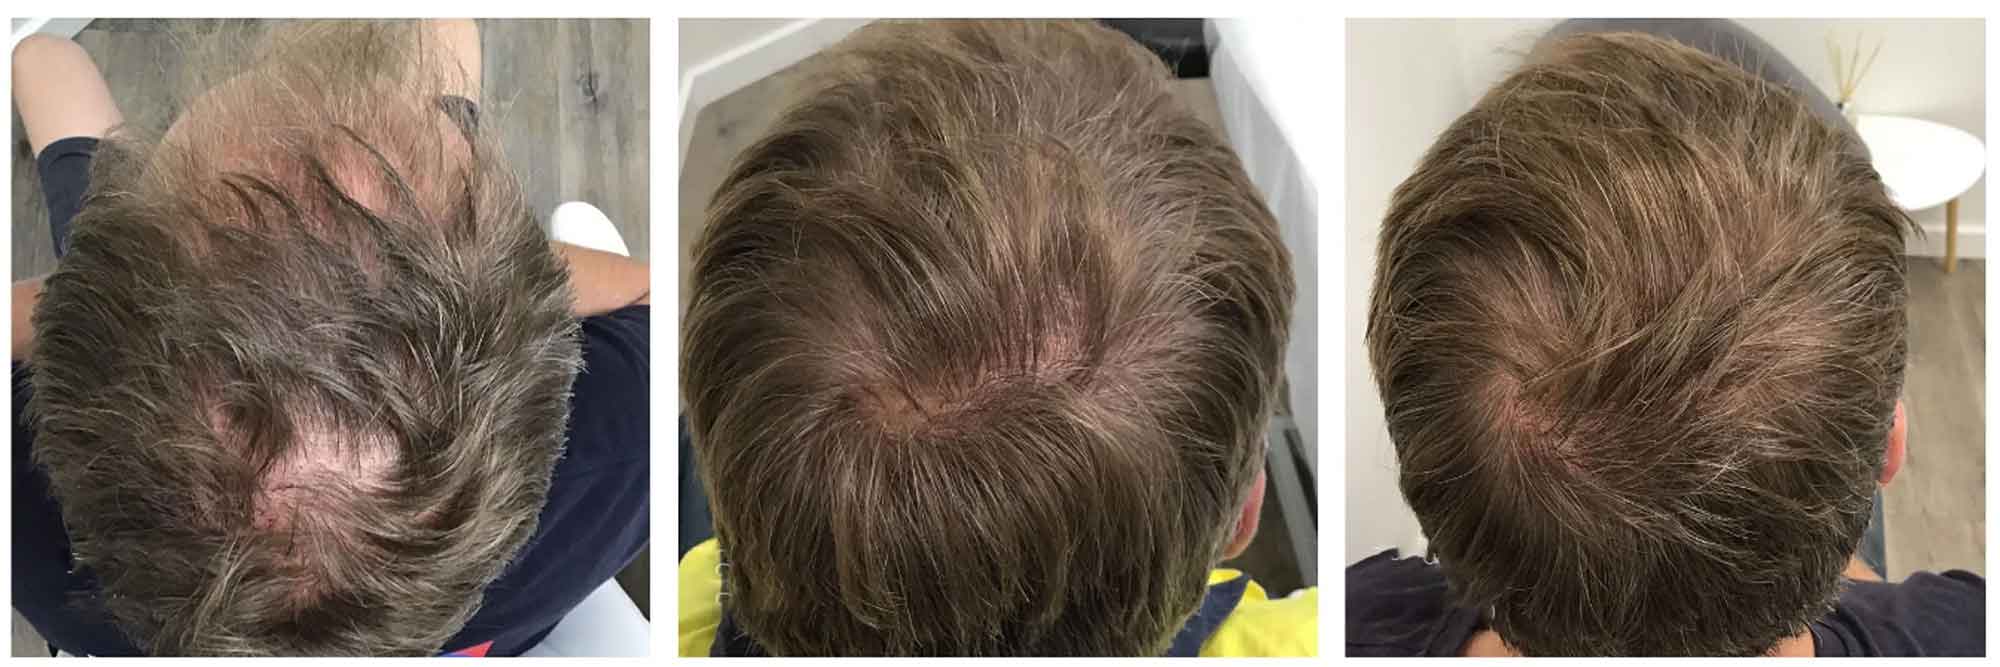 درمان سریع و قطعی تاسی سر با کوکتل فیوژن F-HAIR MEN